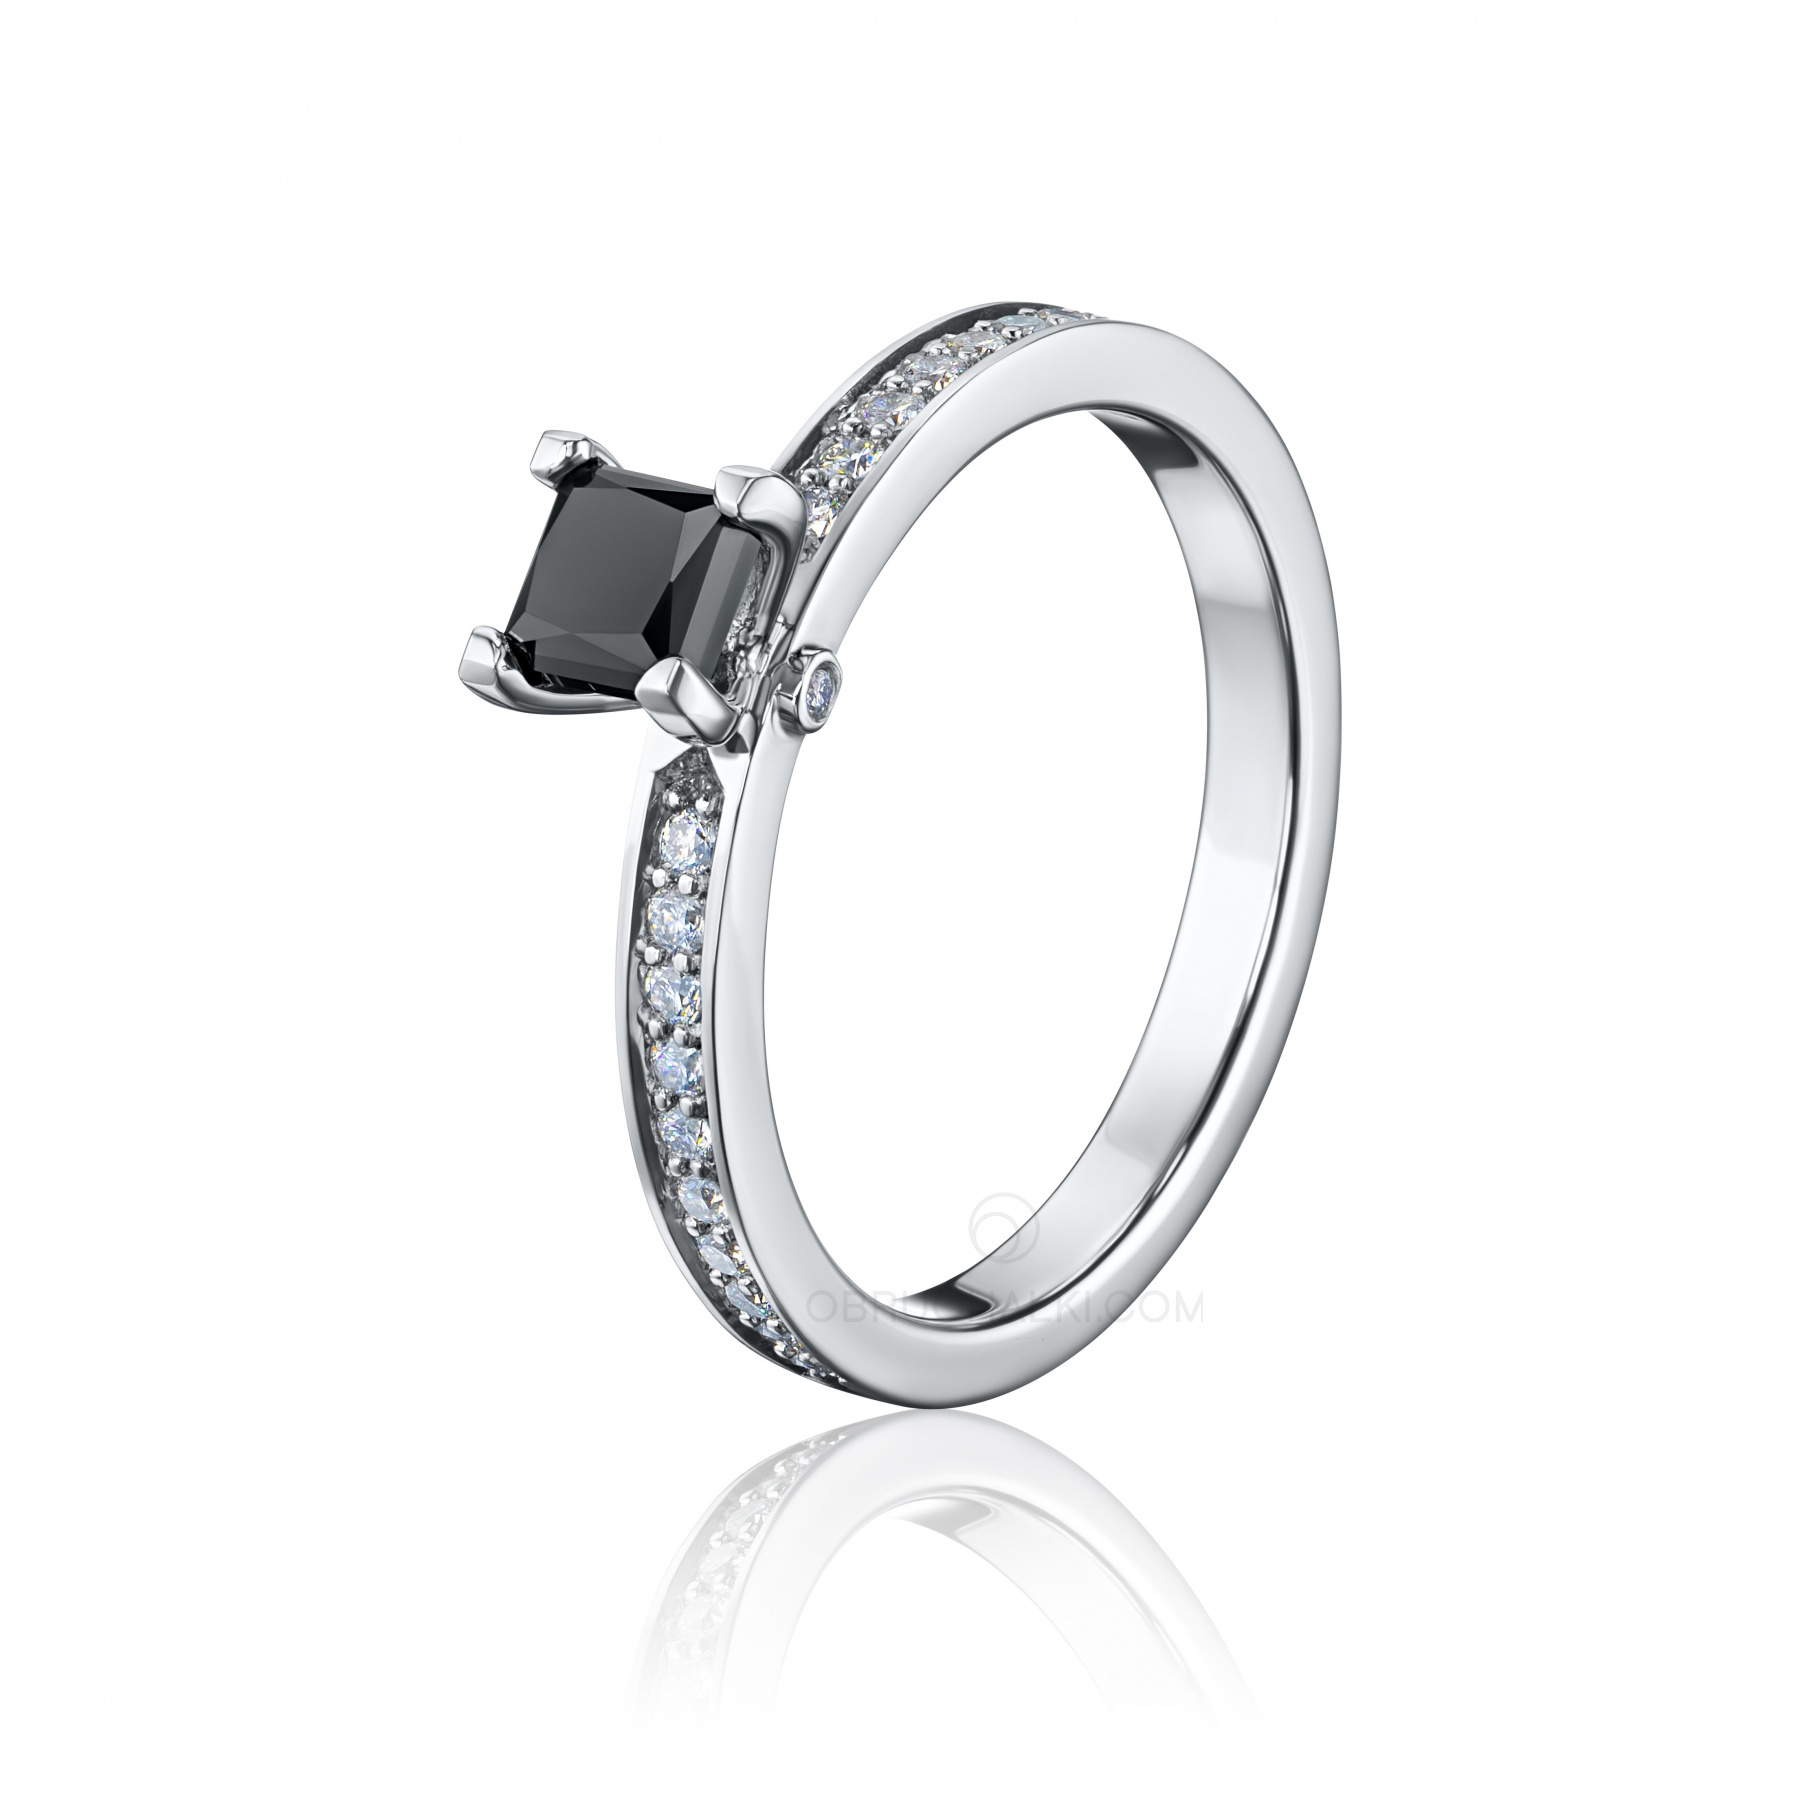 Помолвочное кольцо с черным бриллиантом MYSTERY BLACK DIAMOND купить в магазине: цена, оперативная доставка, отзывы